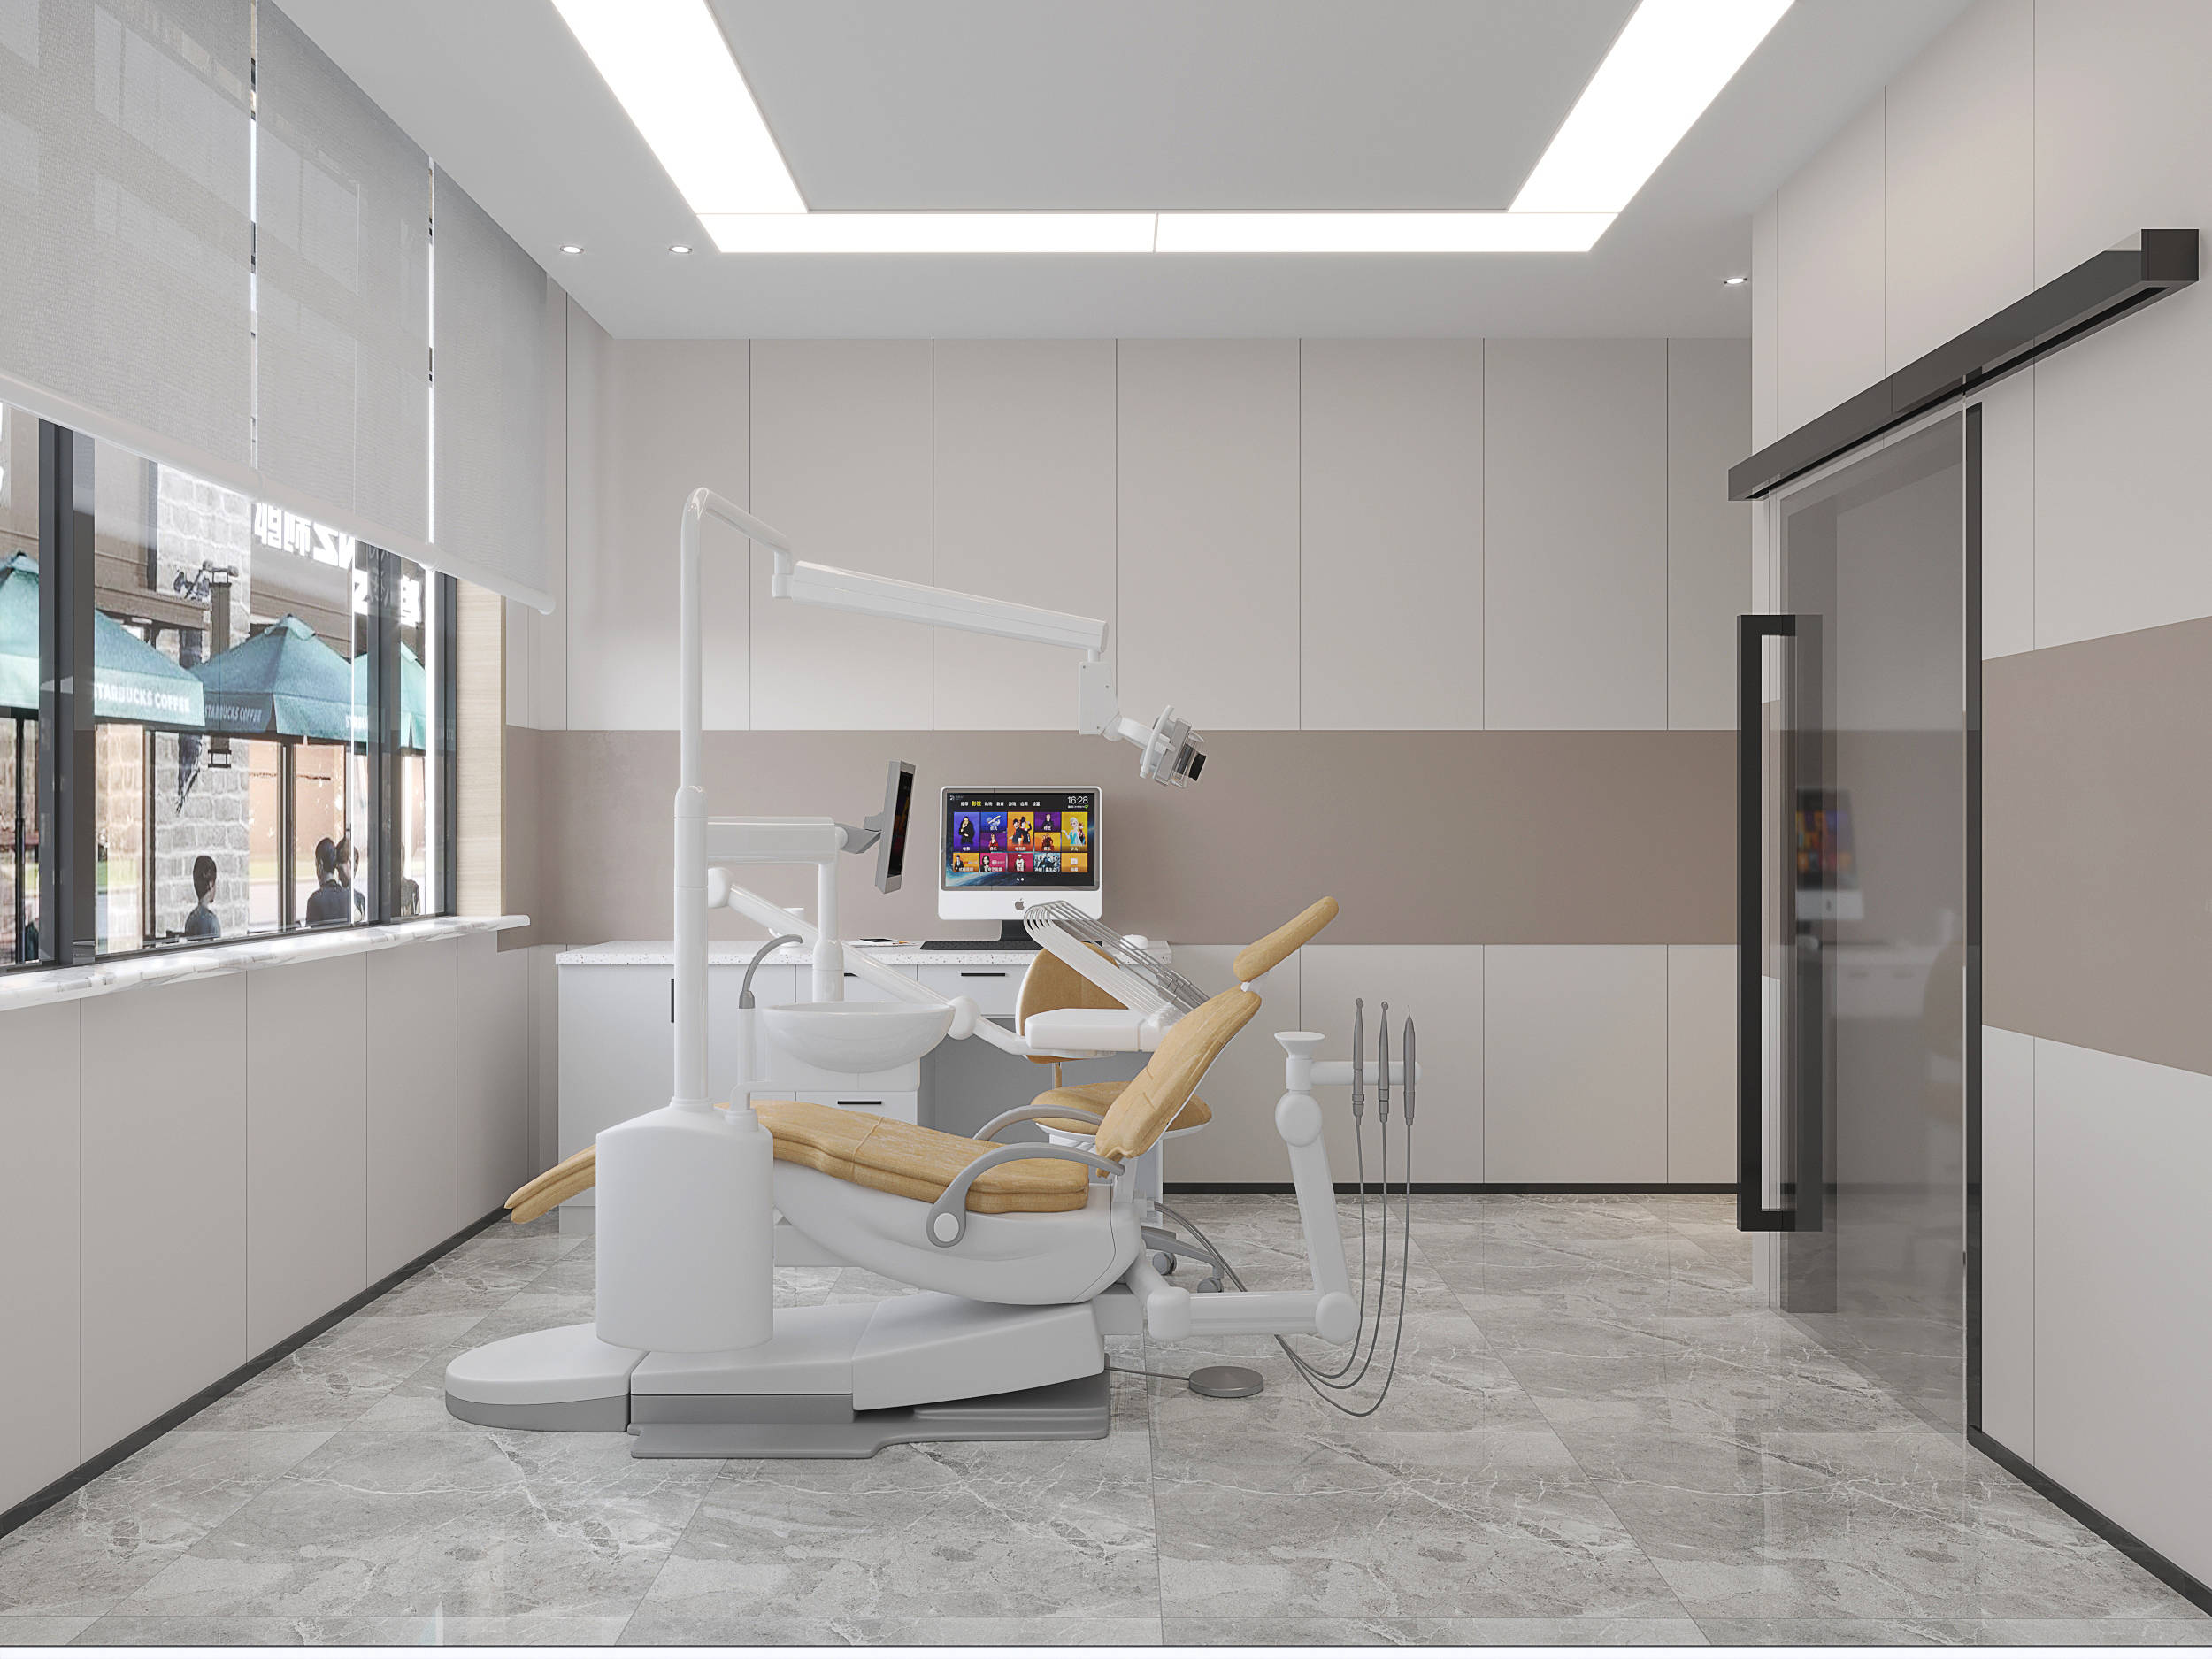 诊所设计效果图:展现医疗空间的魅力与功能